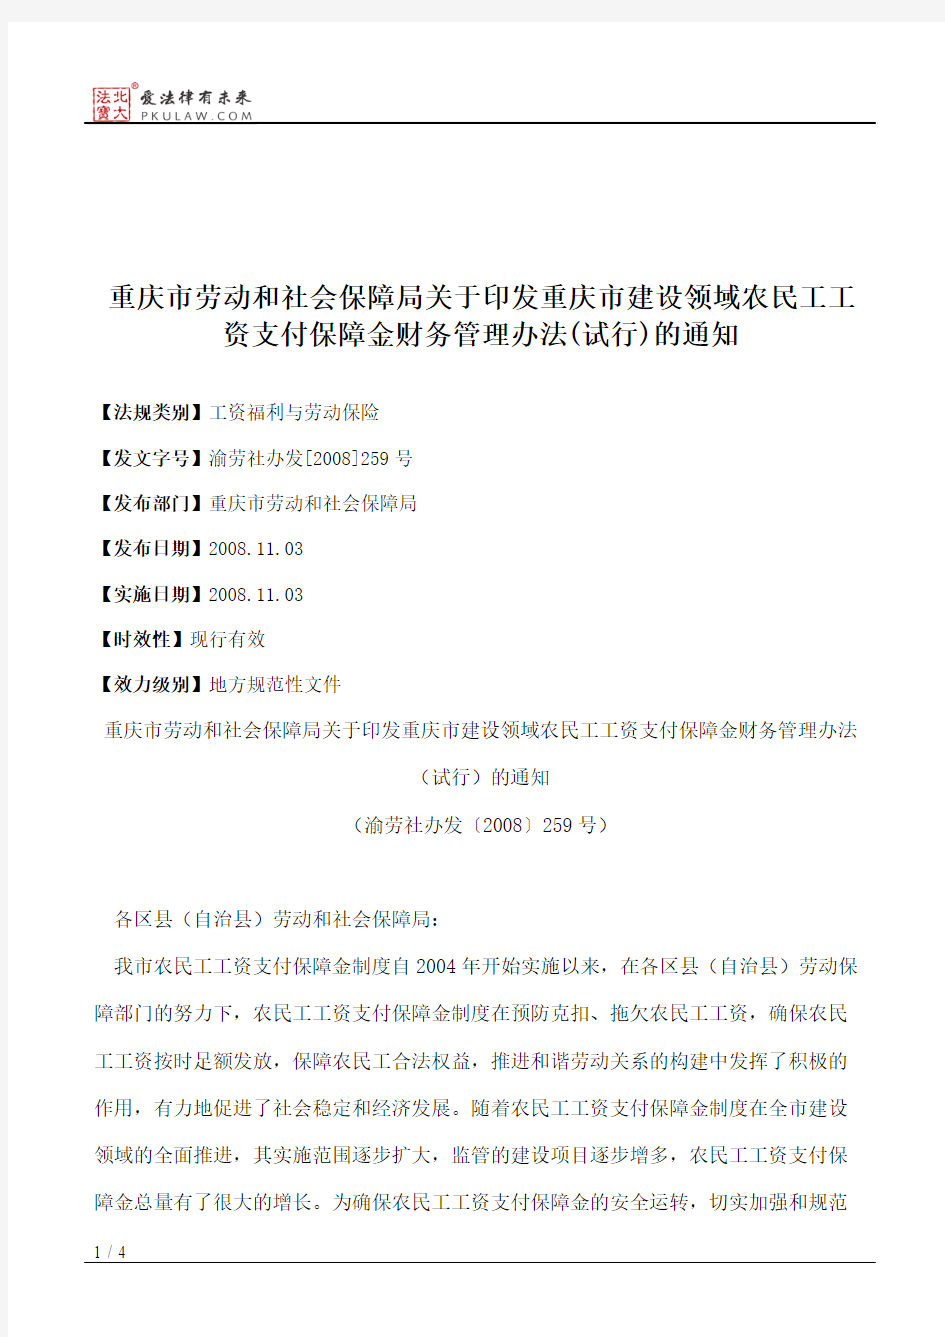 重庆市劳动和社会保障局关于印发重庆市建设领域农民工工资支付保